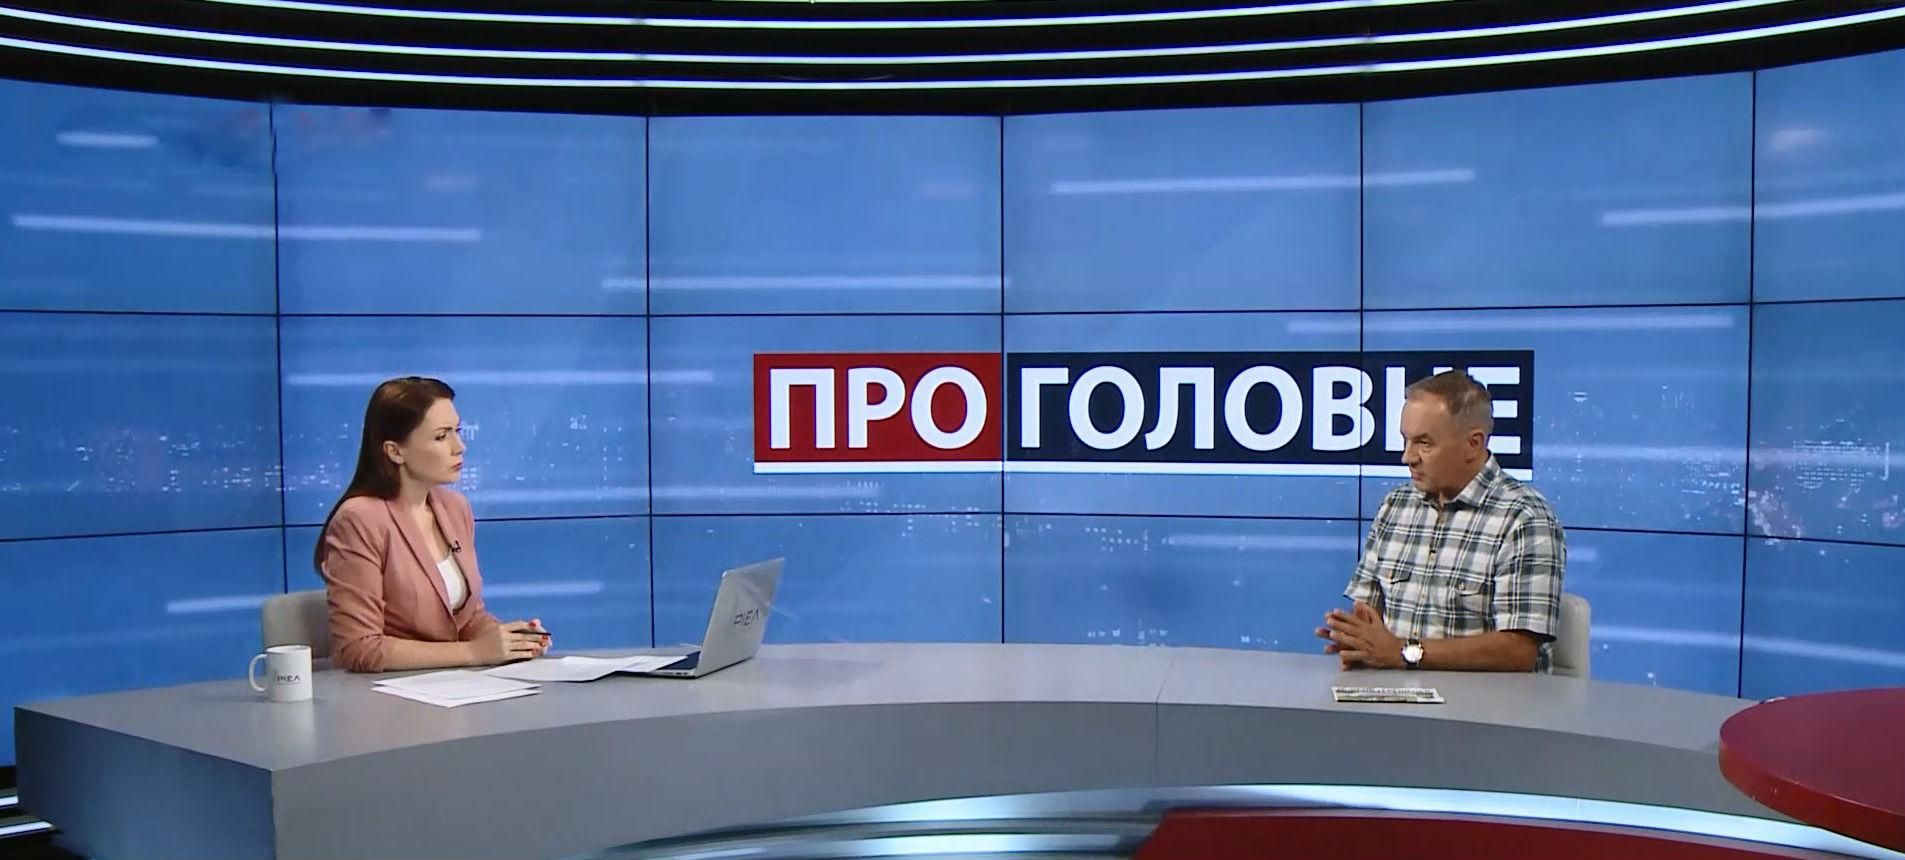 Мишель Терещенко рассказал, почему в кабинете снял портрет Порошенко за время его президентства